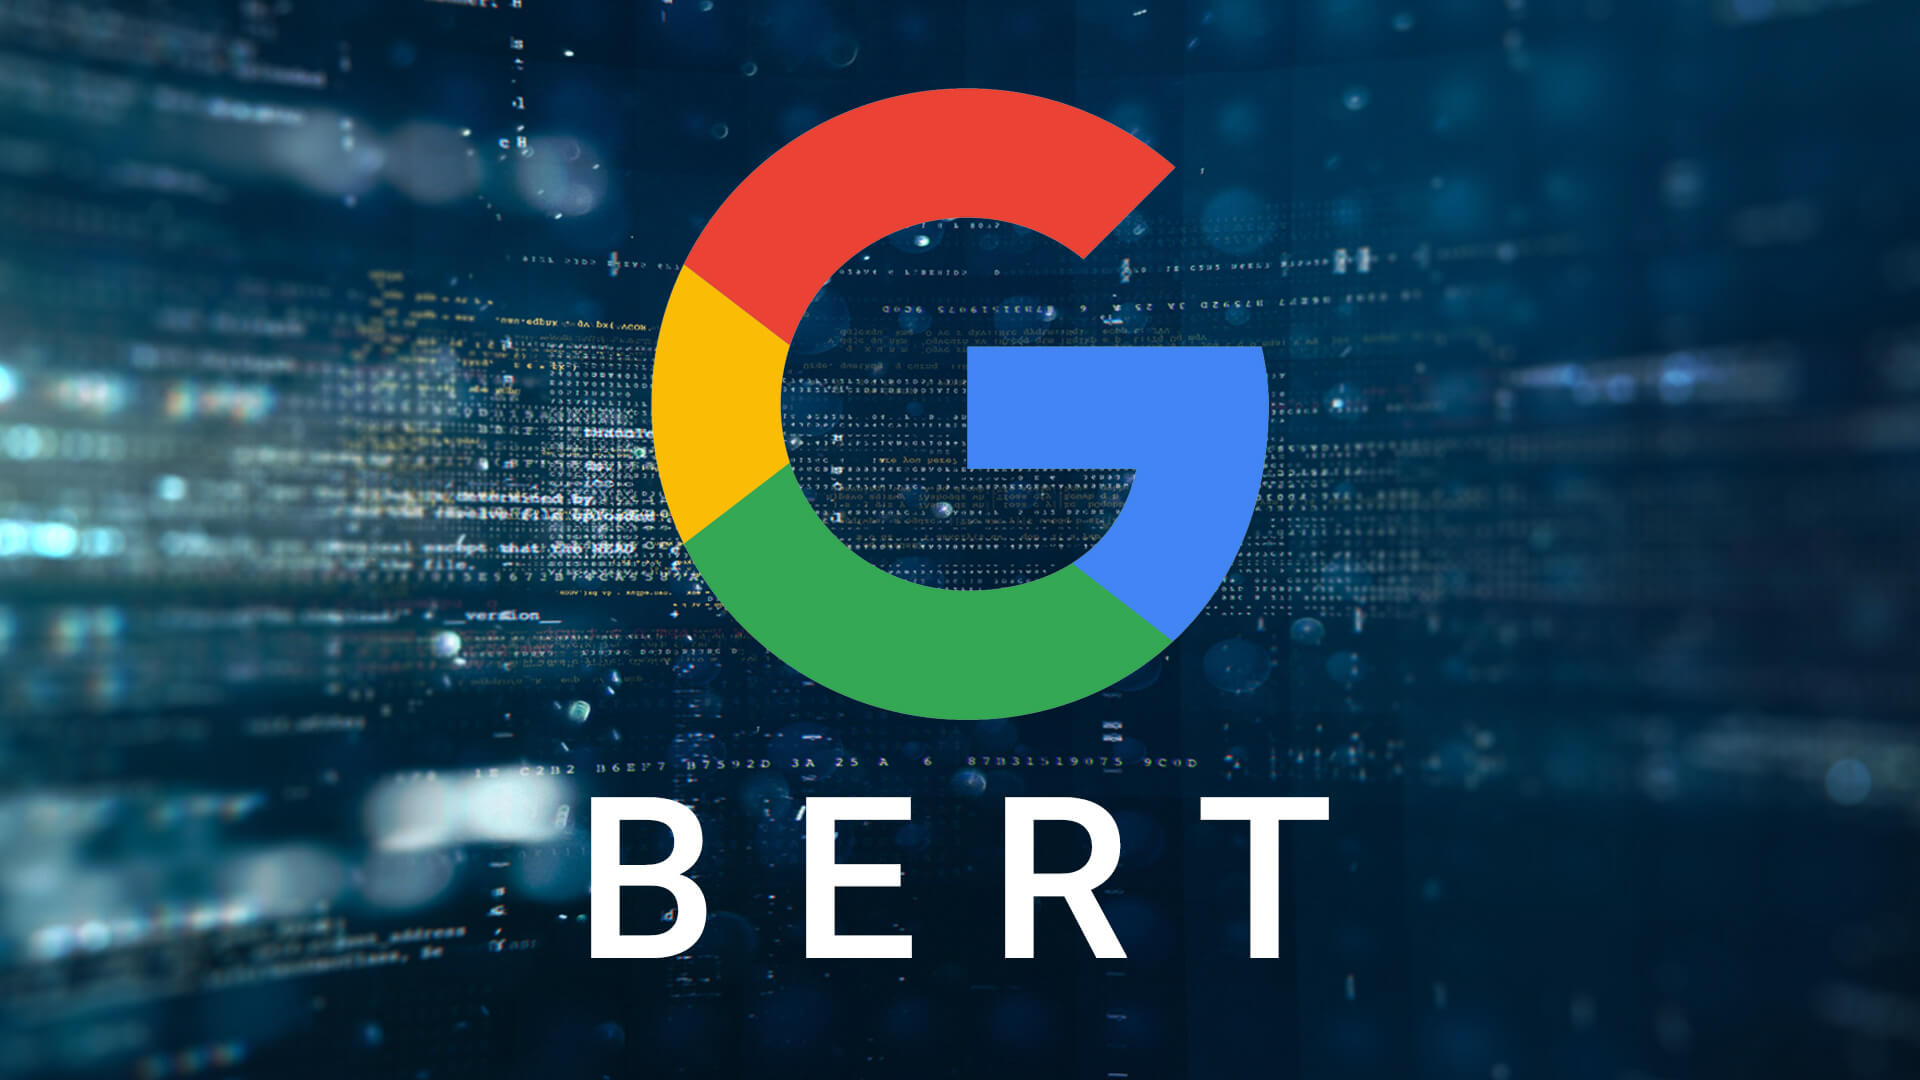 ทำความรู้จัก BERT Google